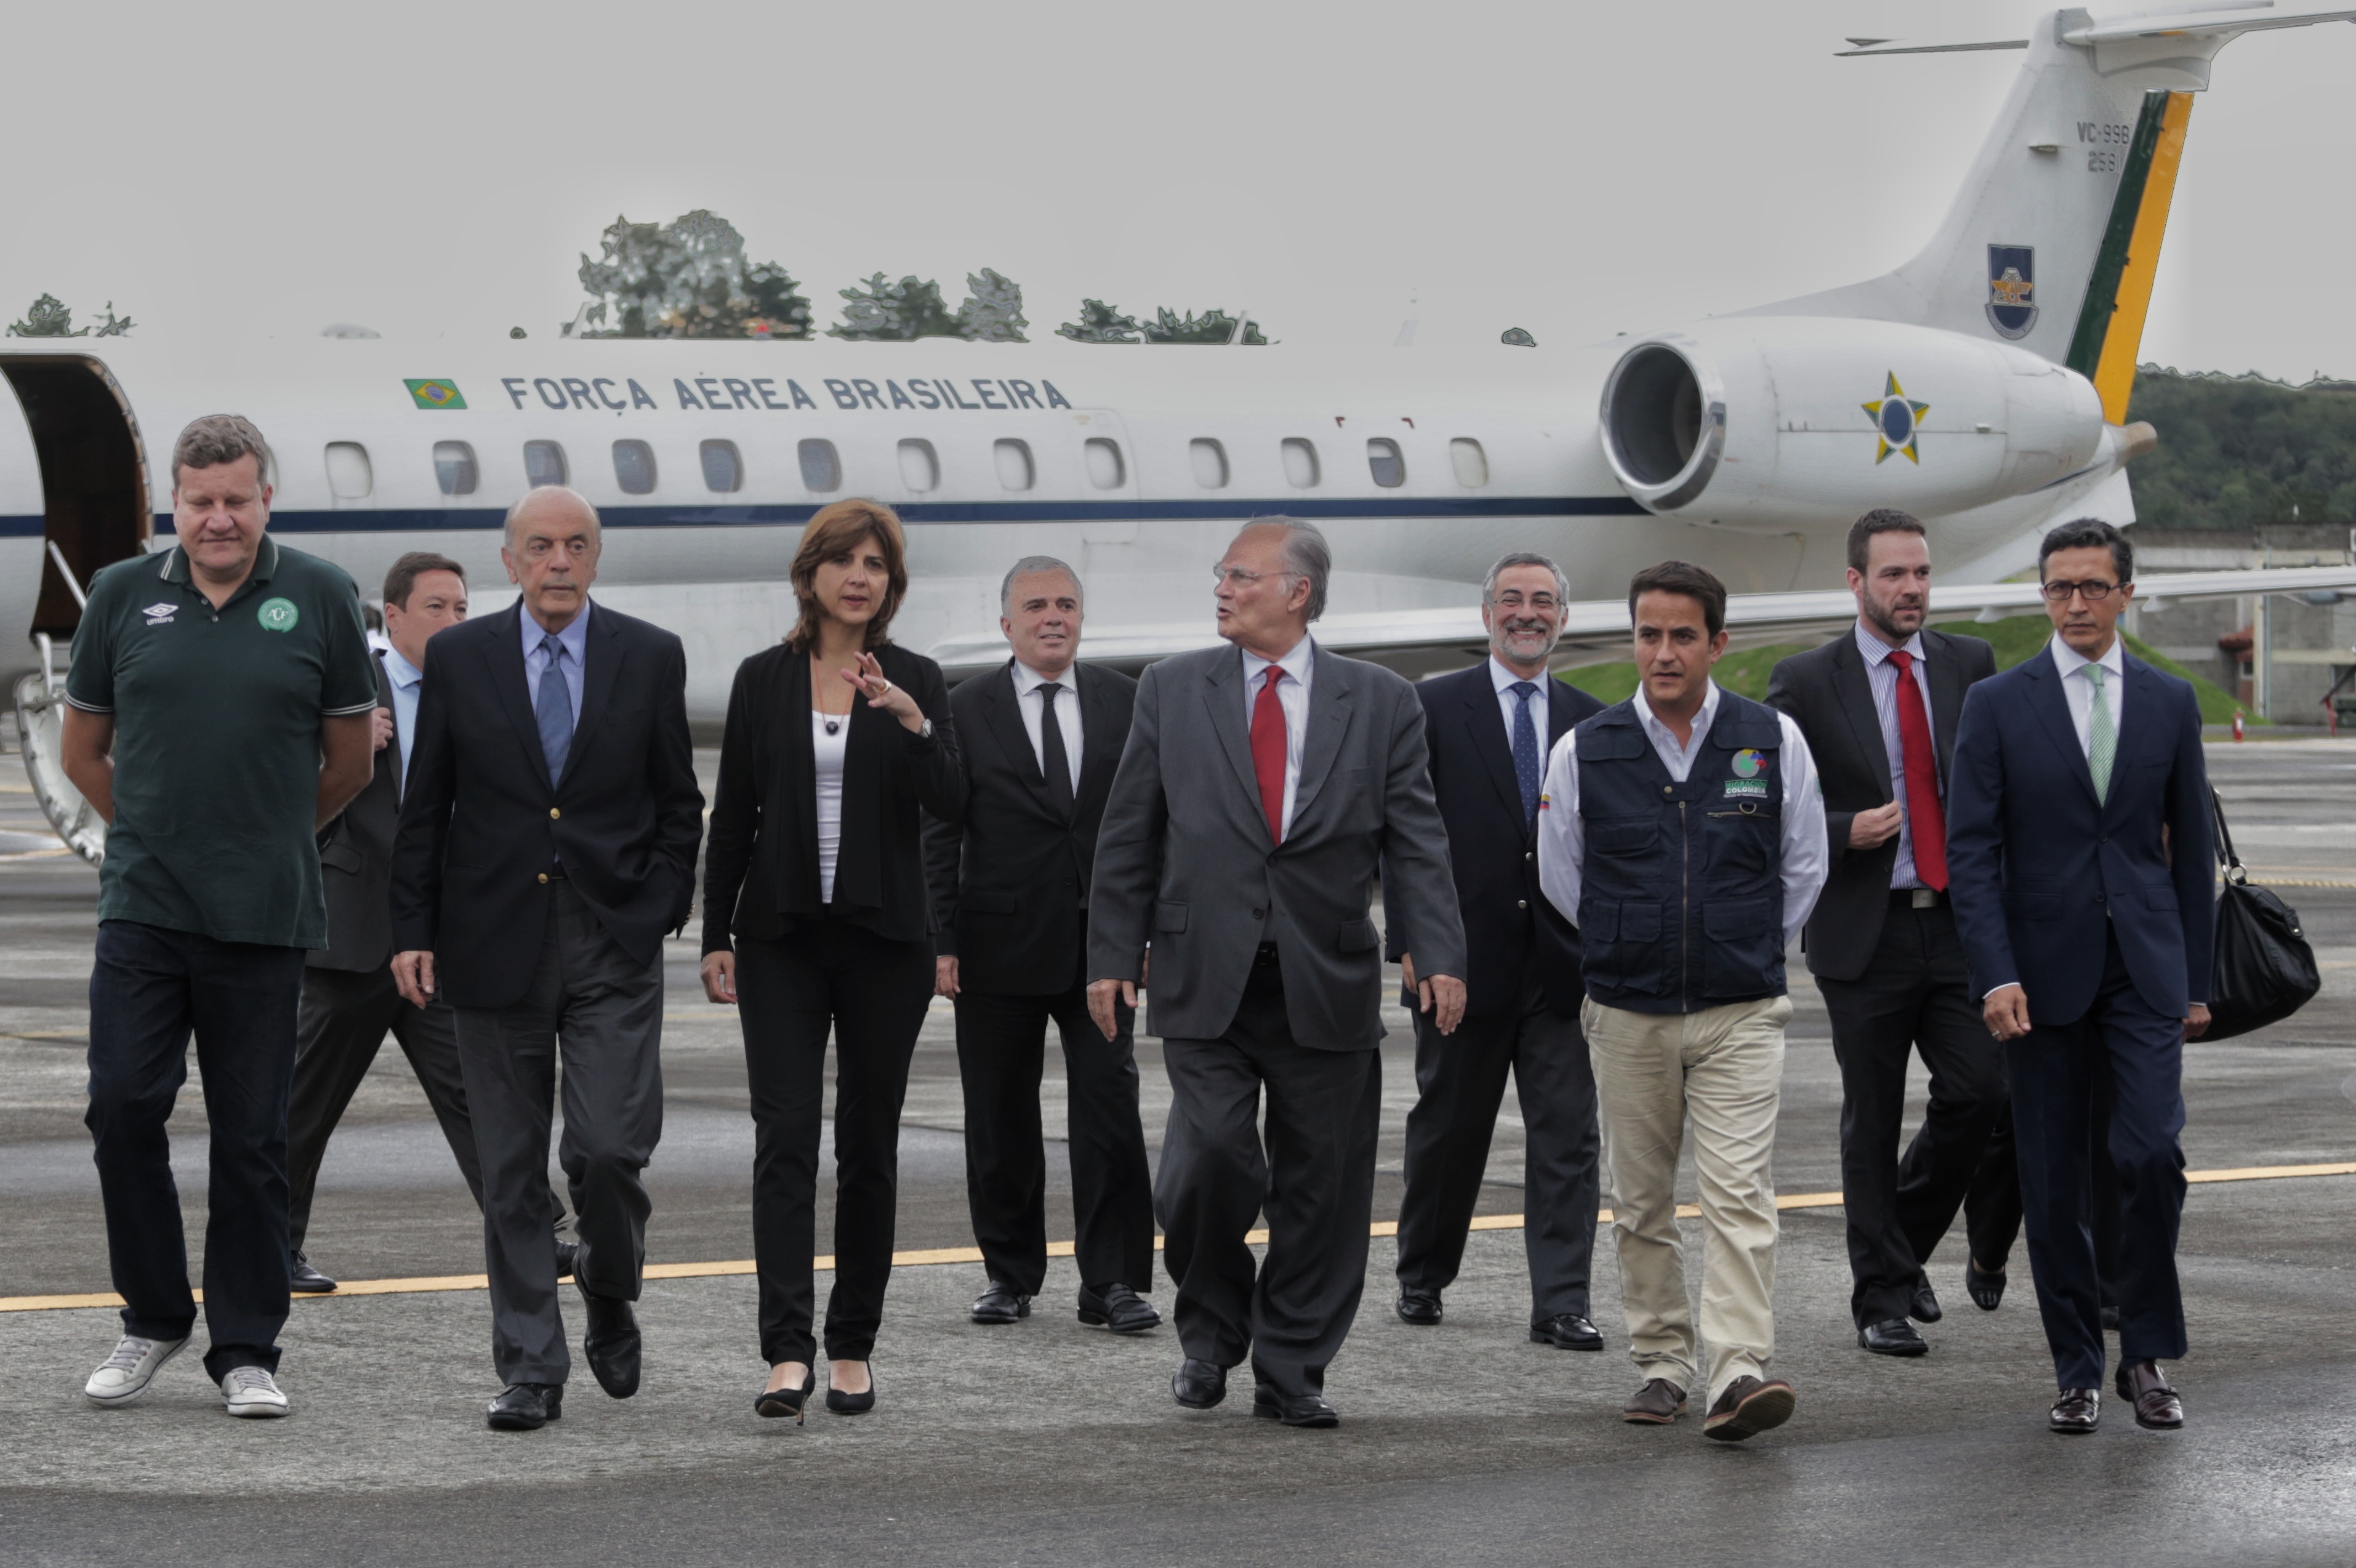 Canciller Holguín acoCanciller Holguín acompañó en Medellín a delegación brasileña enviada por presidente Temermpañó en Medellín a delegación brasileña enviada por el Presidente Temer